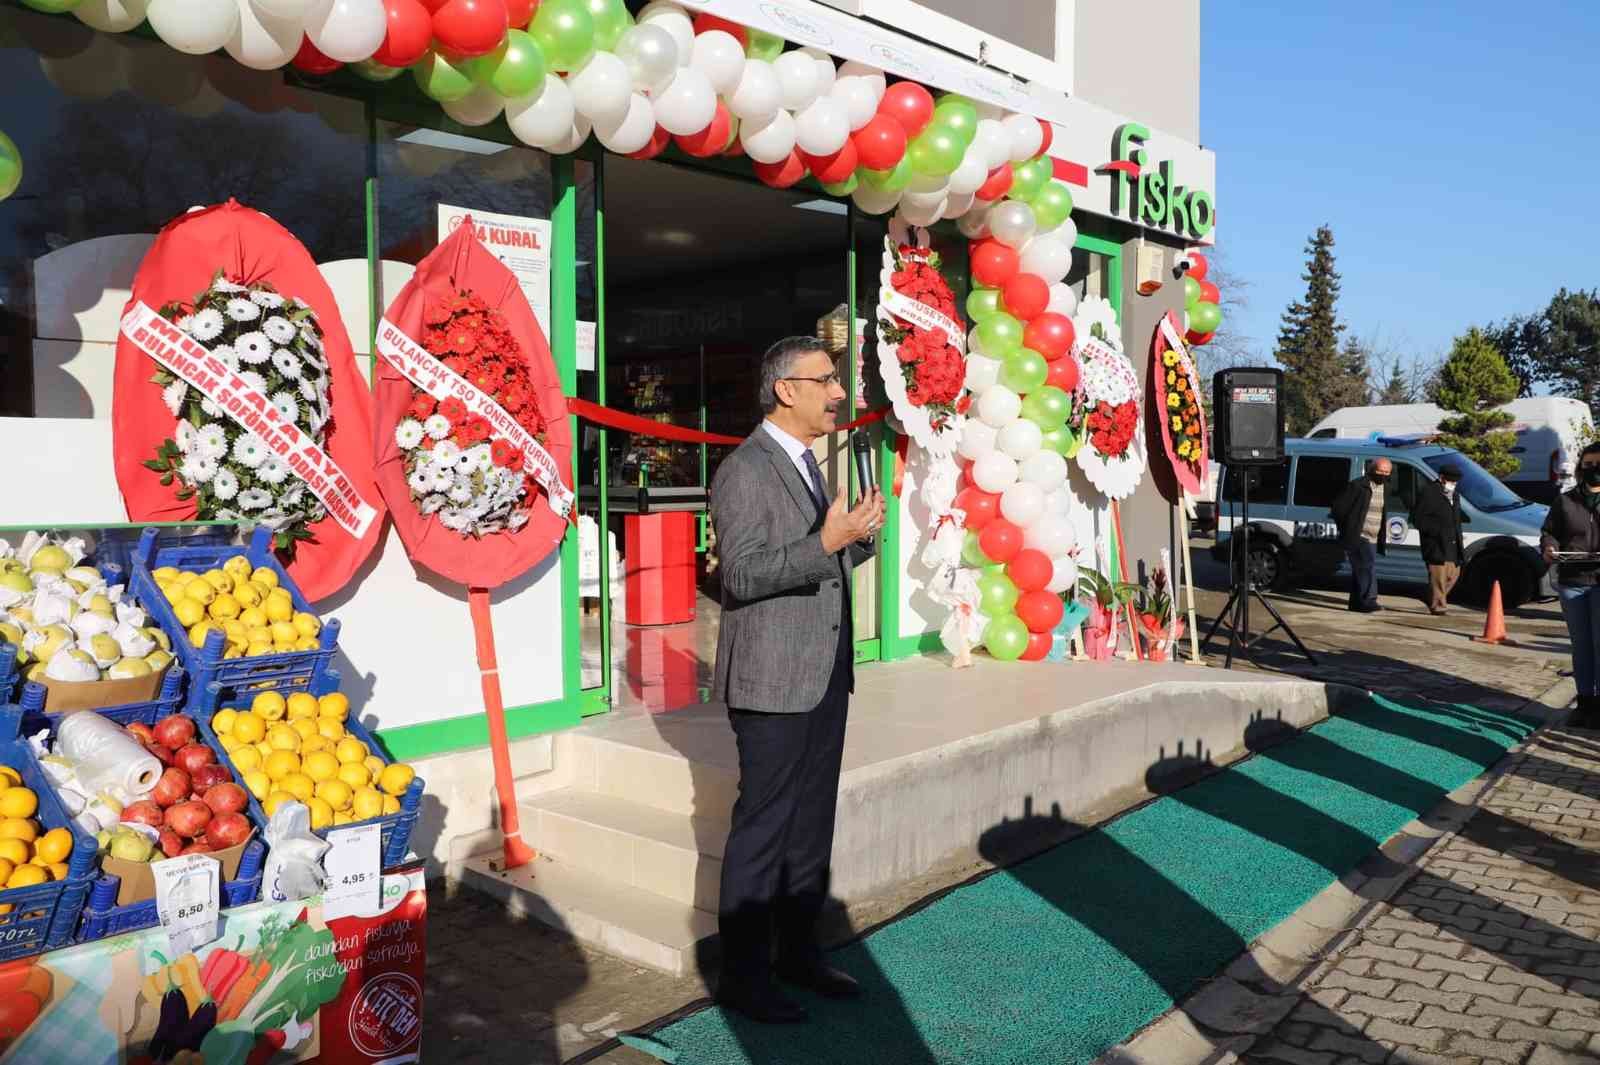 FİSKOBİRLİK’in 36. marketi Giresun’un Piraziz ilçesinde açıldı #giresun